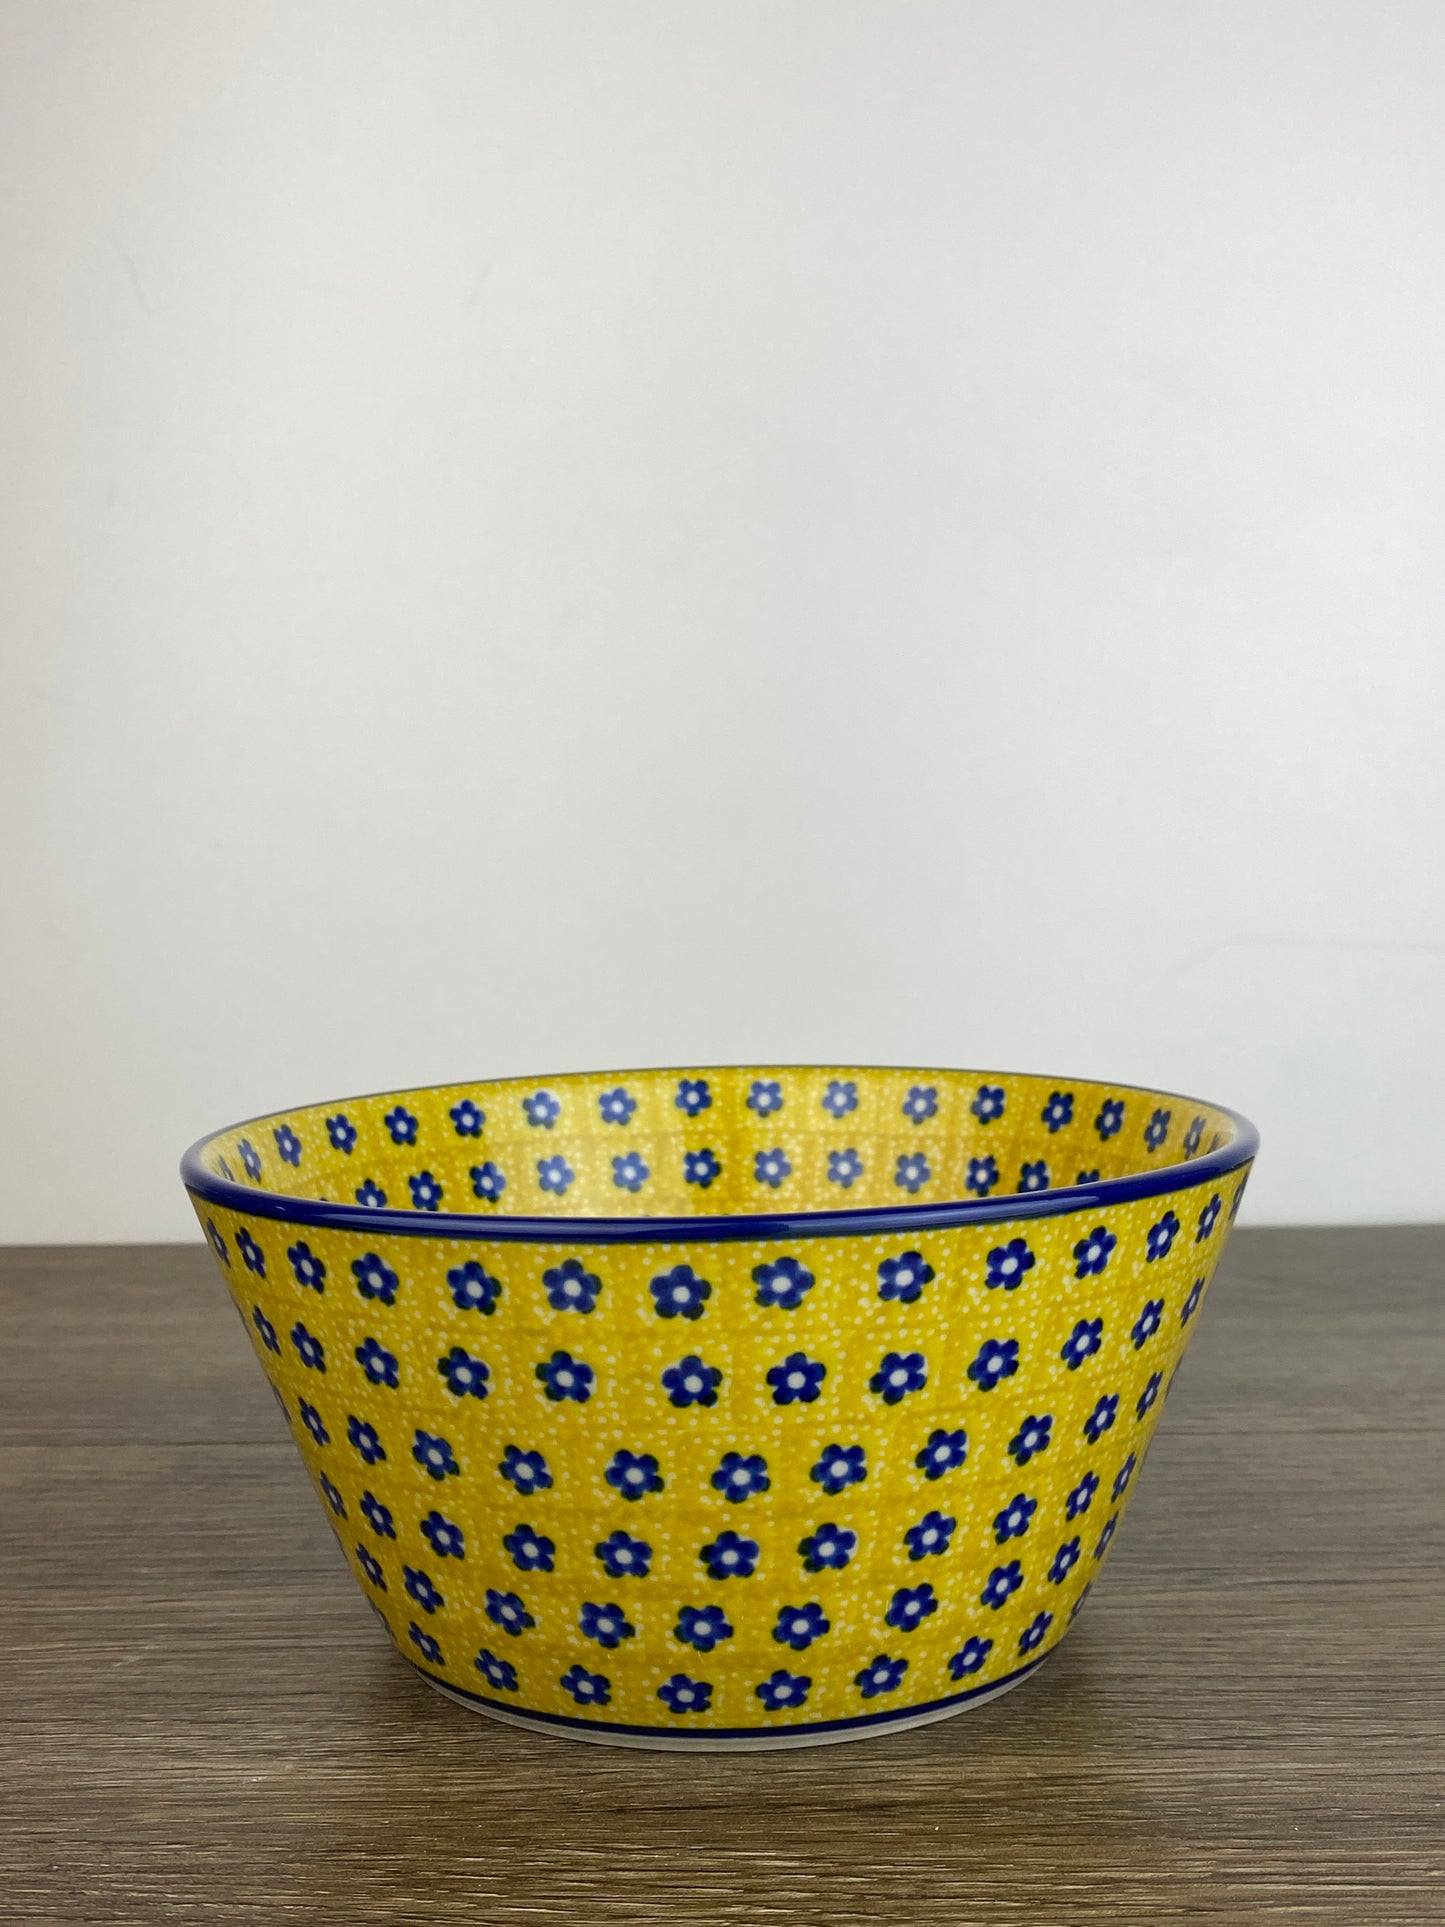 Medium Bowl - Shape E97 - Pattern 242